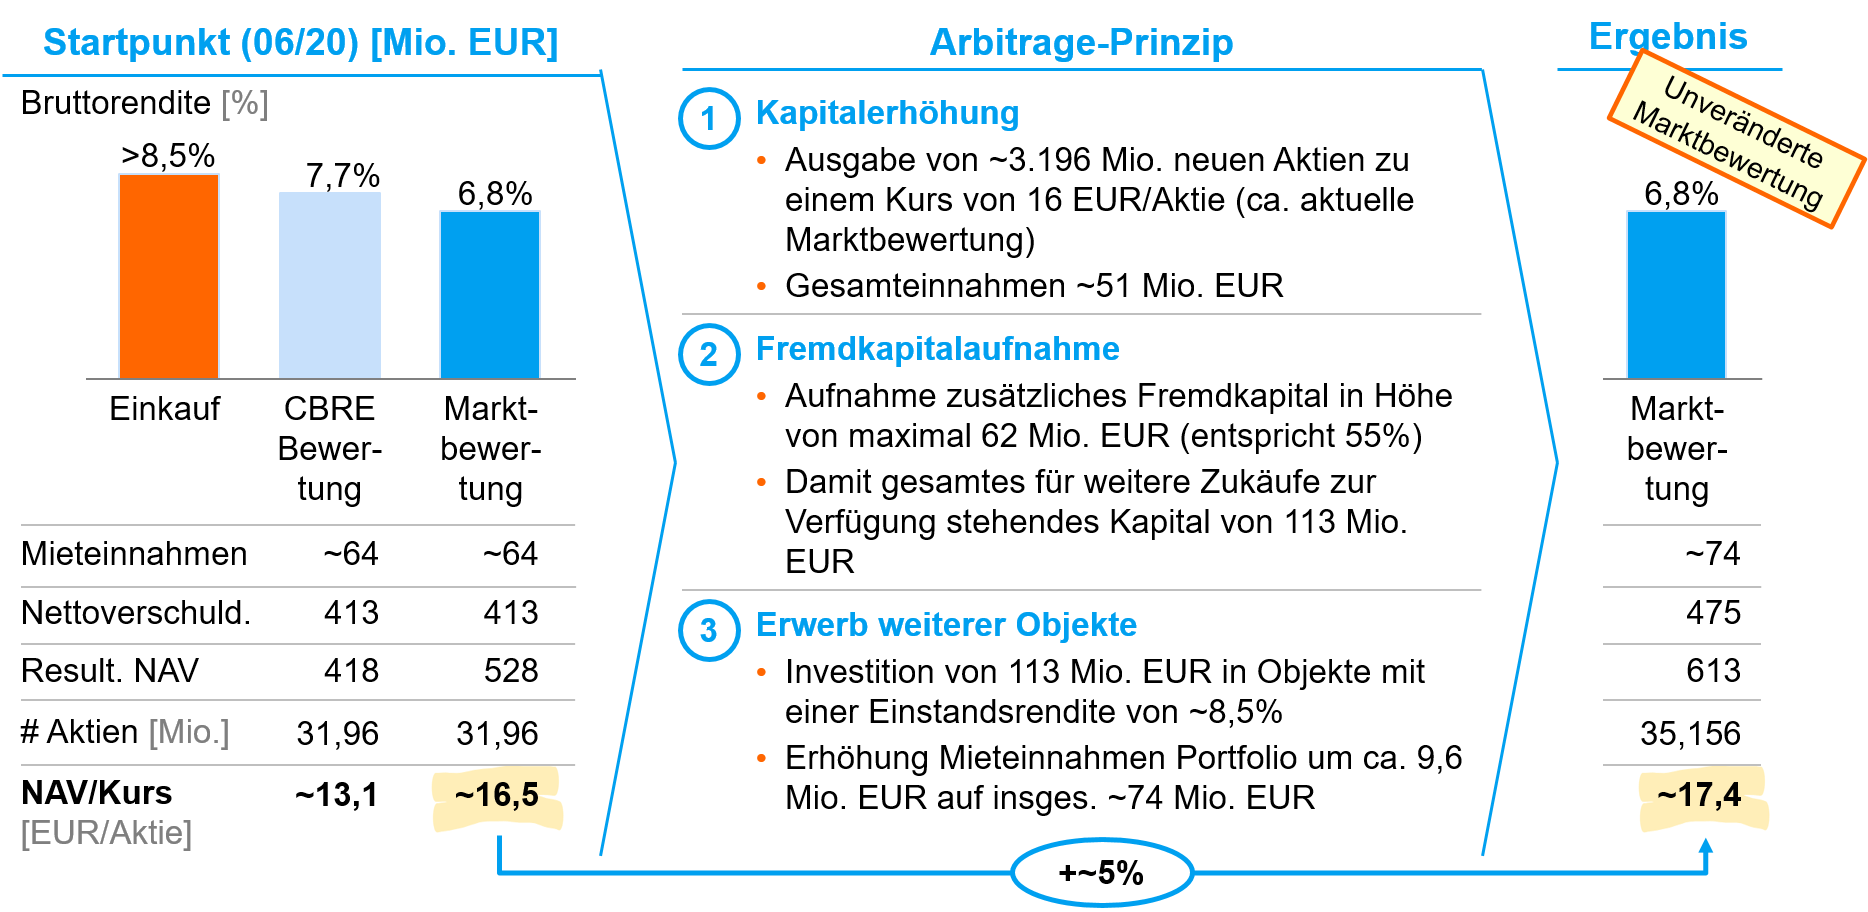 Arbitrage-Prinzip Deutsche Konsum REIT